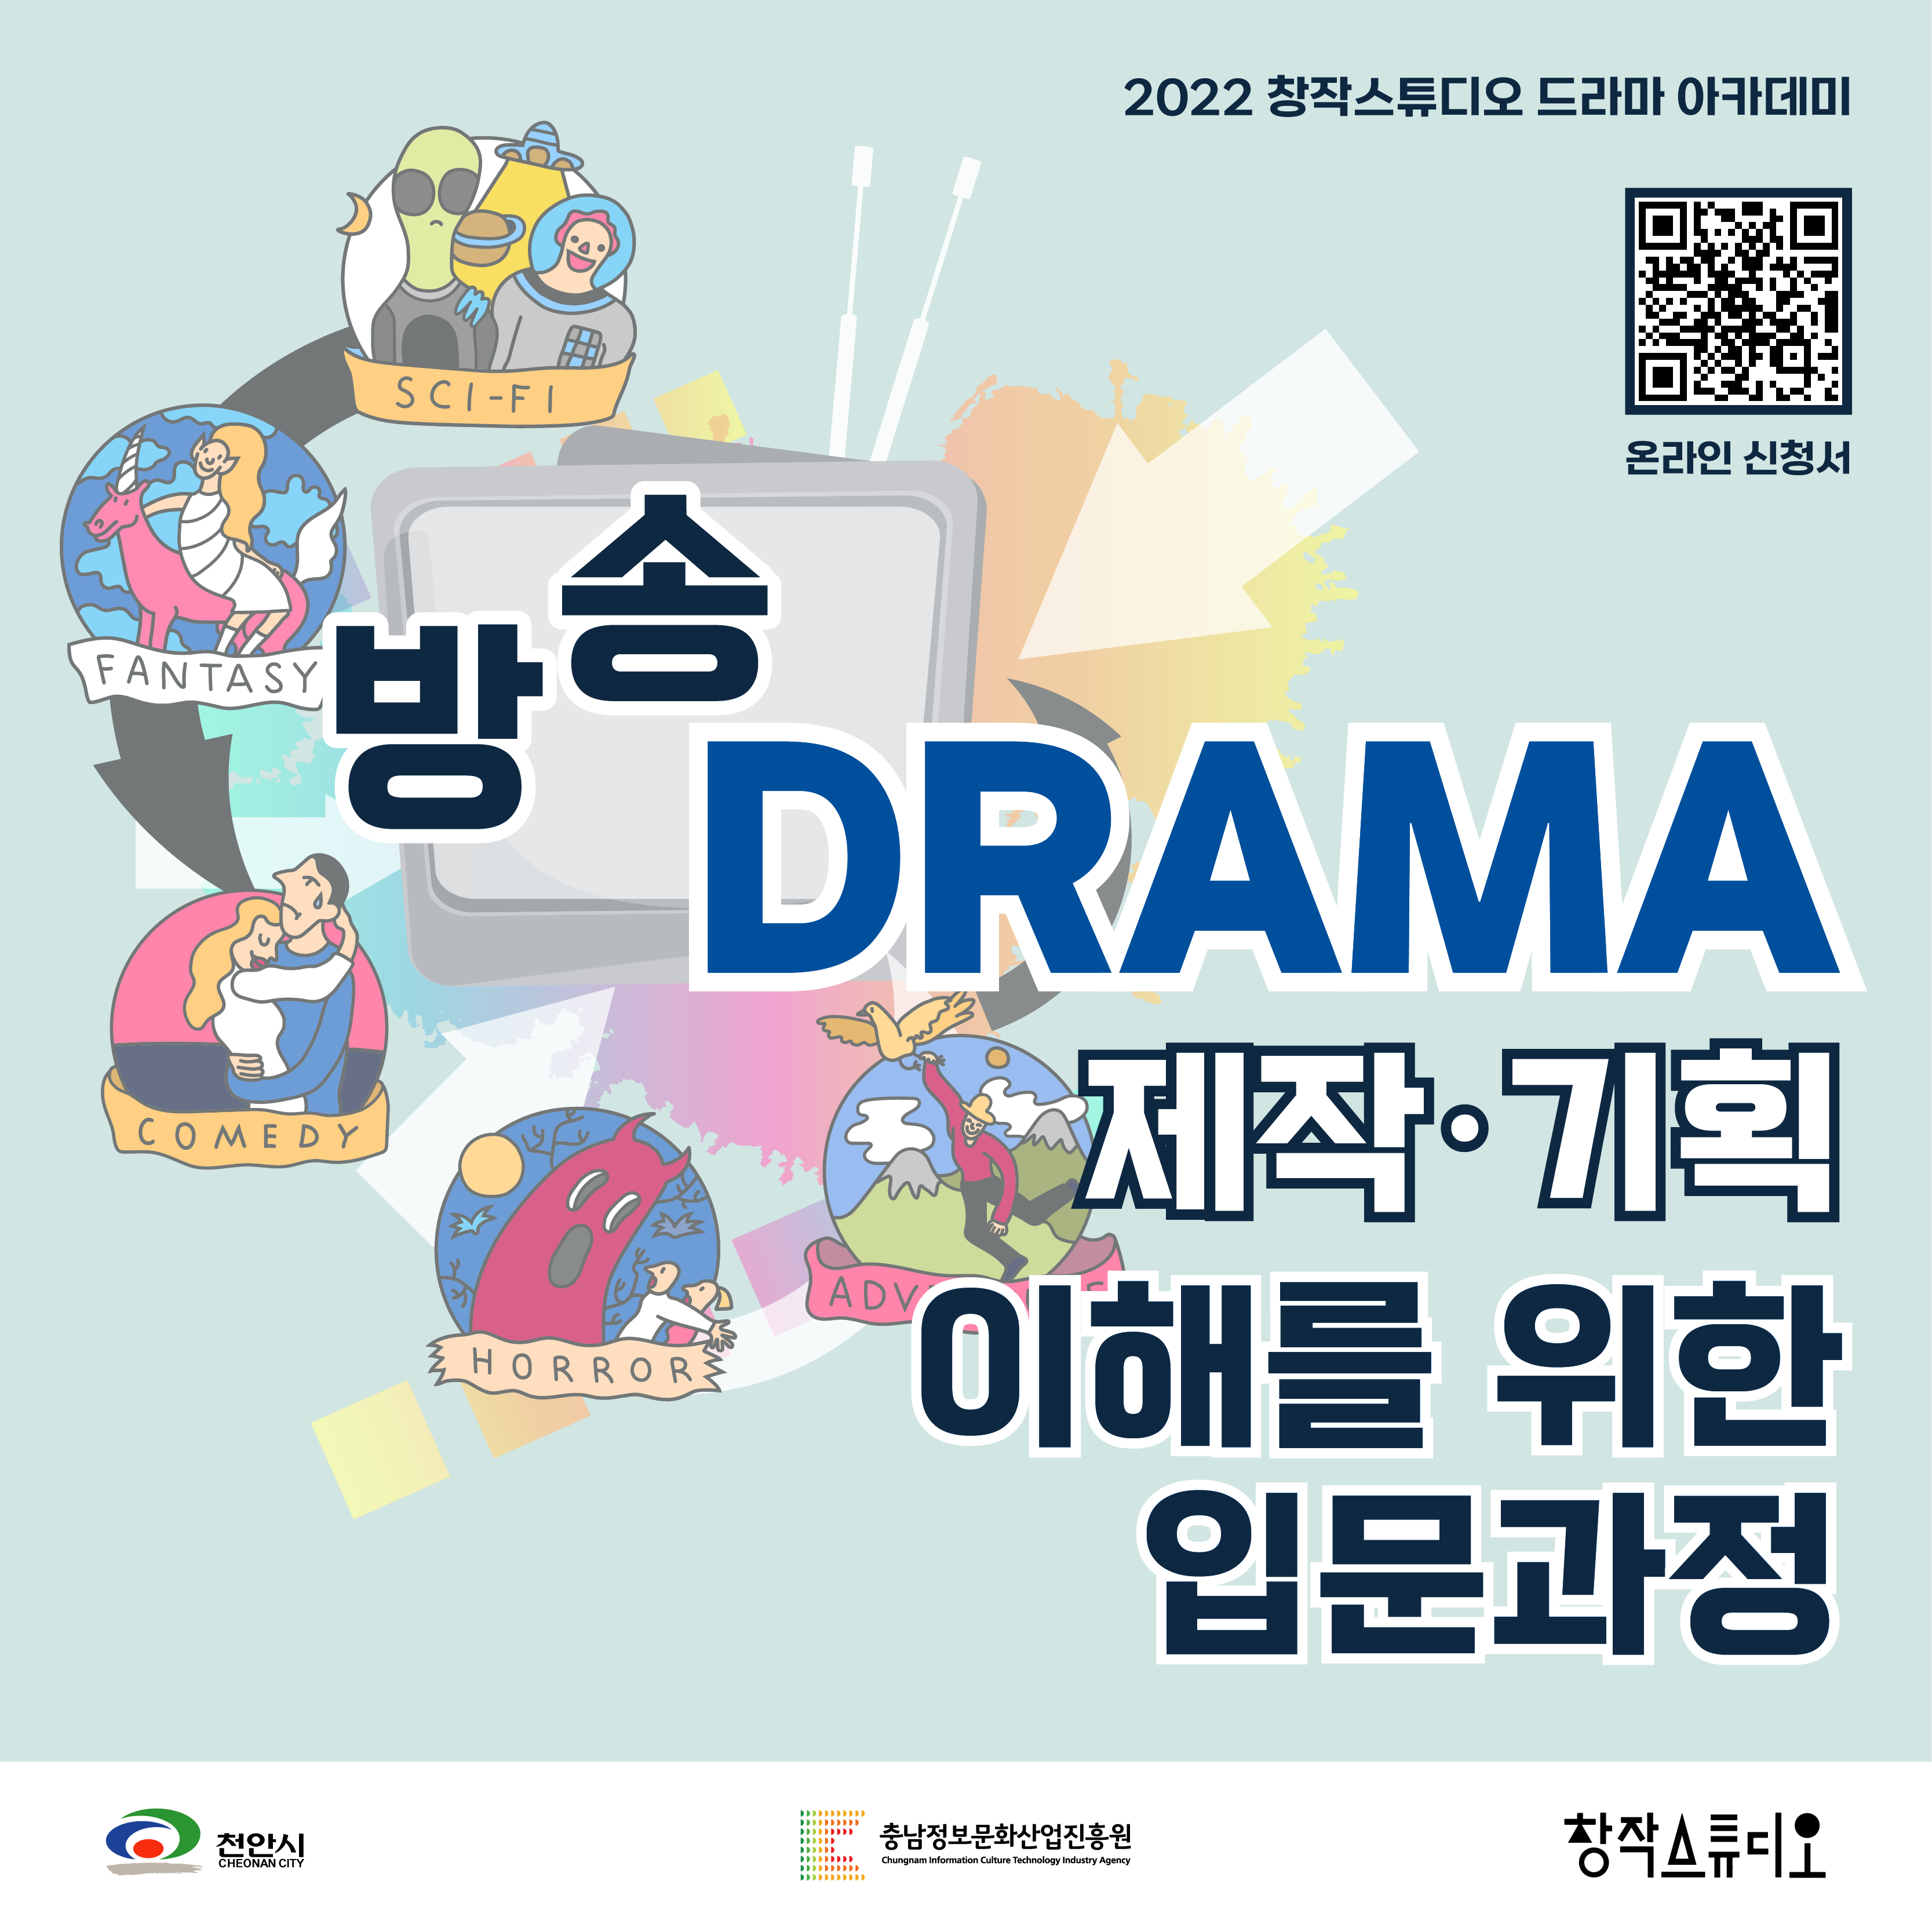 [충남정보문화산업진흥원] 2022 창작스튜디오 방송 드라마 제작, 기획 이해를 위한 입문 과정